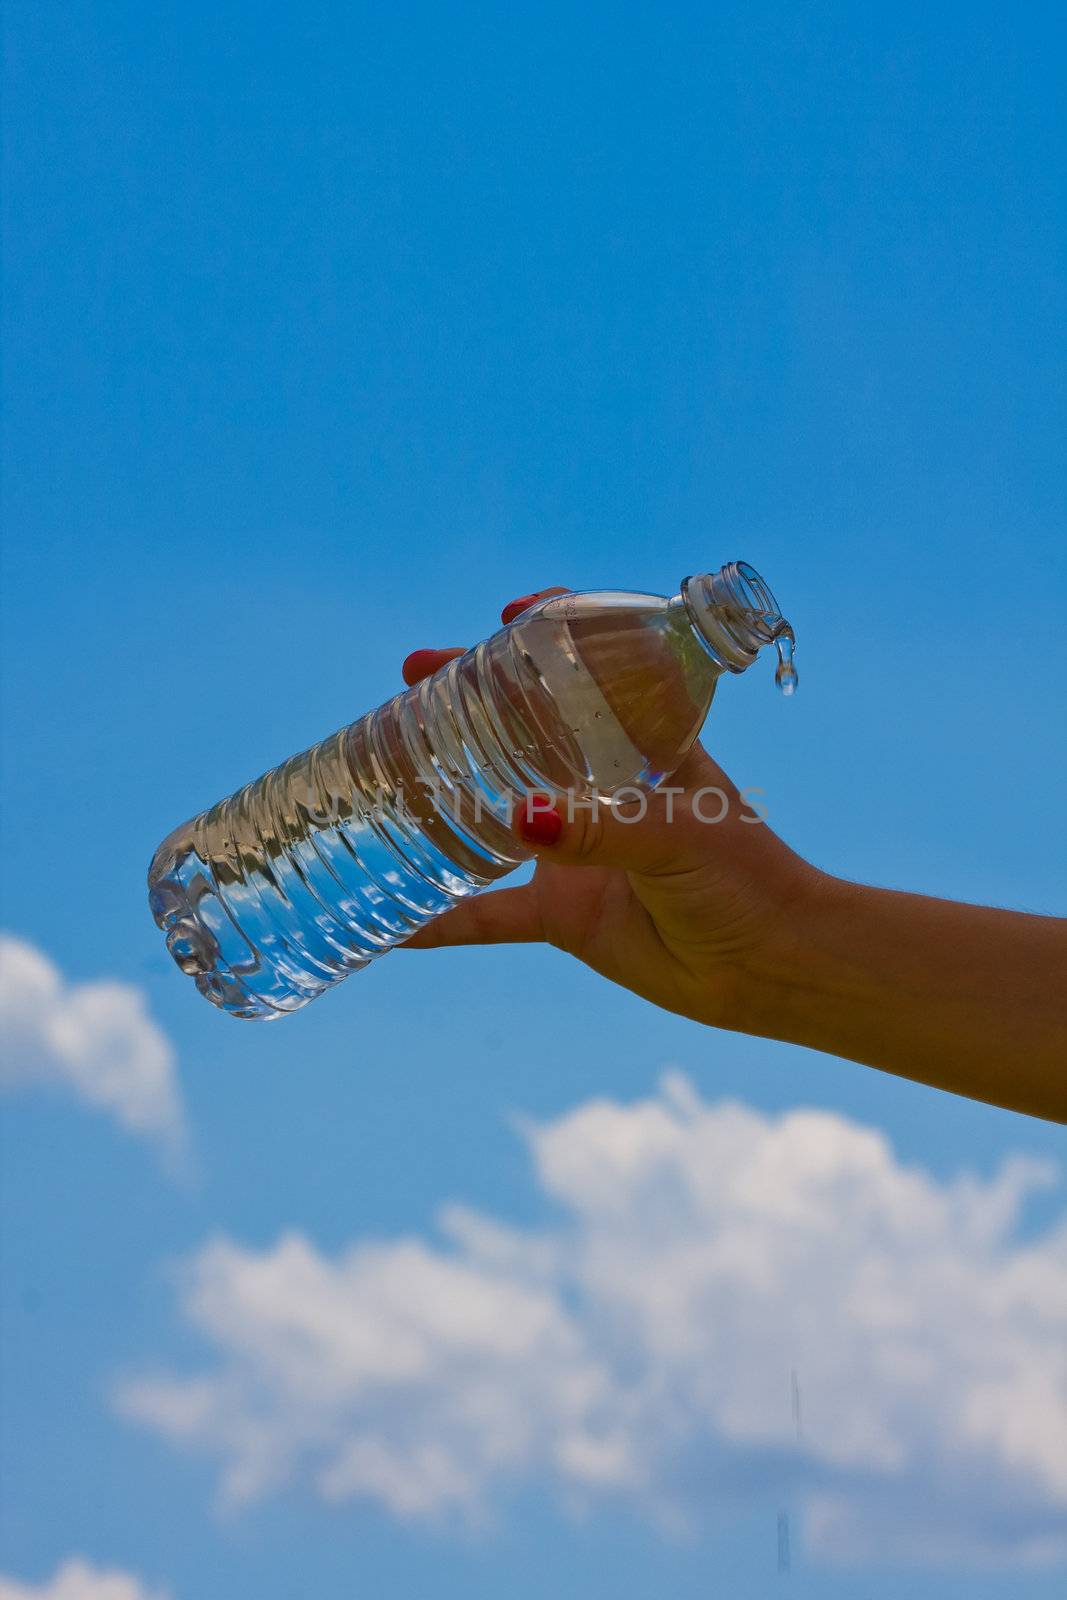 water bottle by snokid